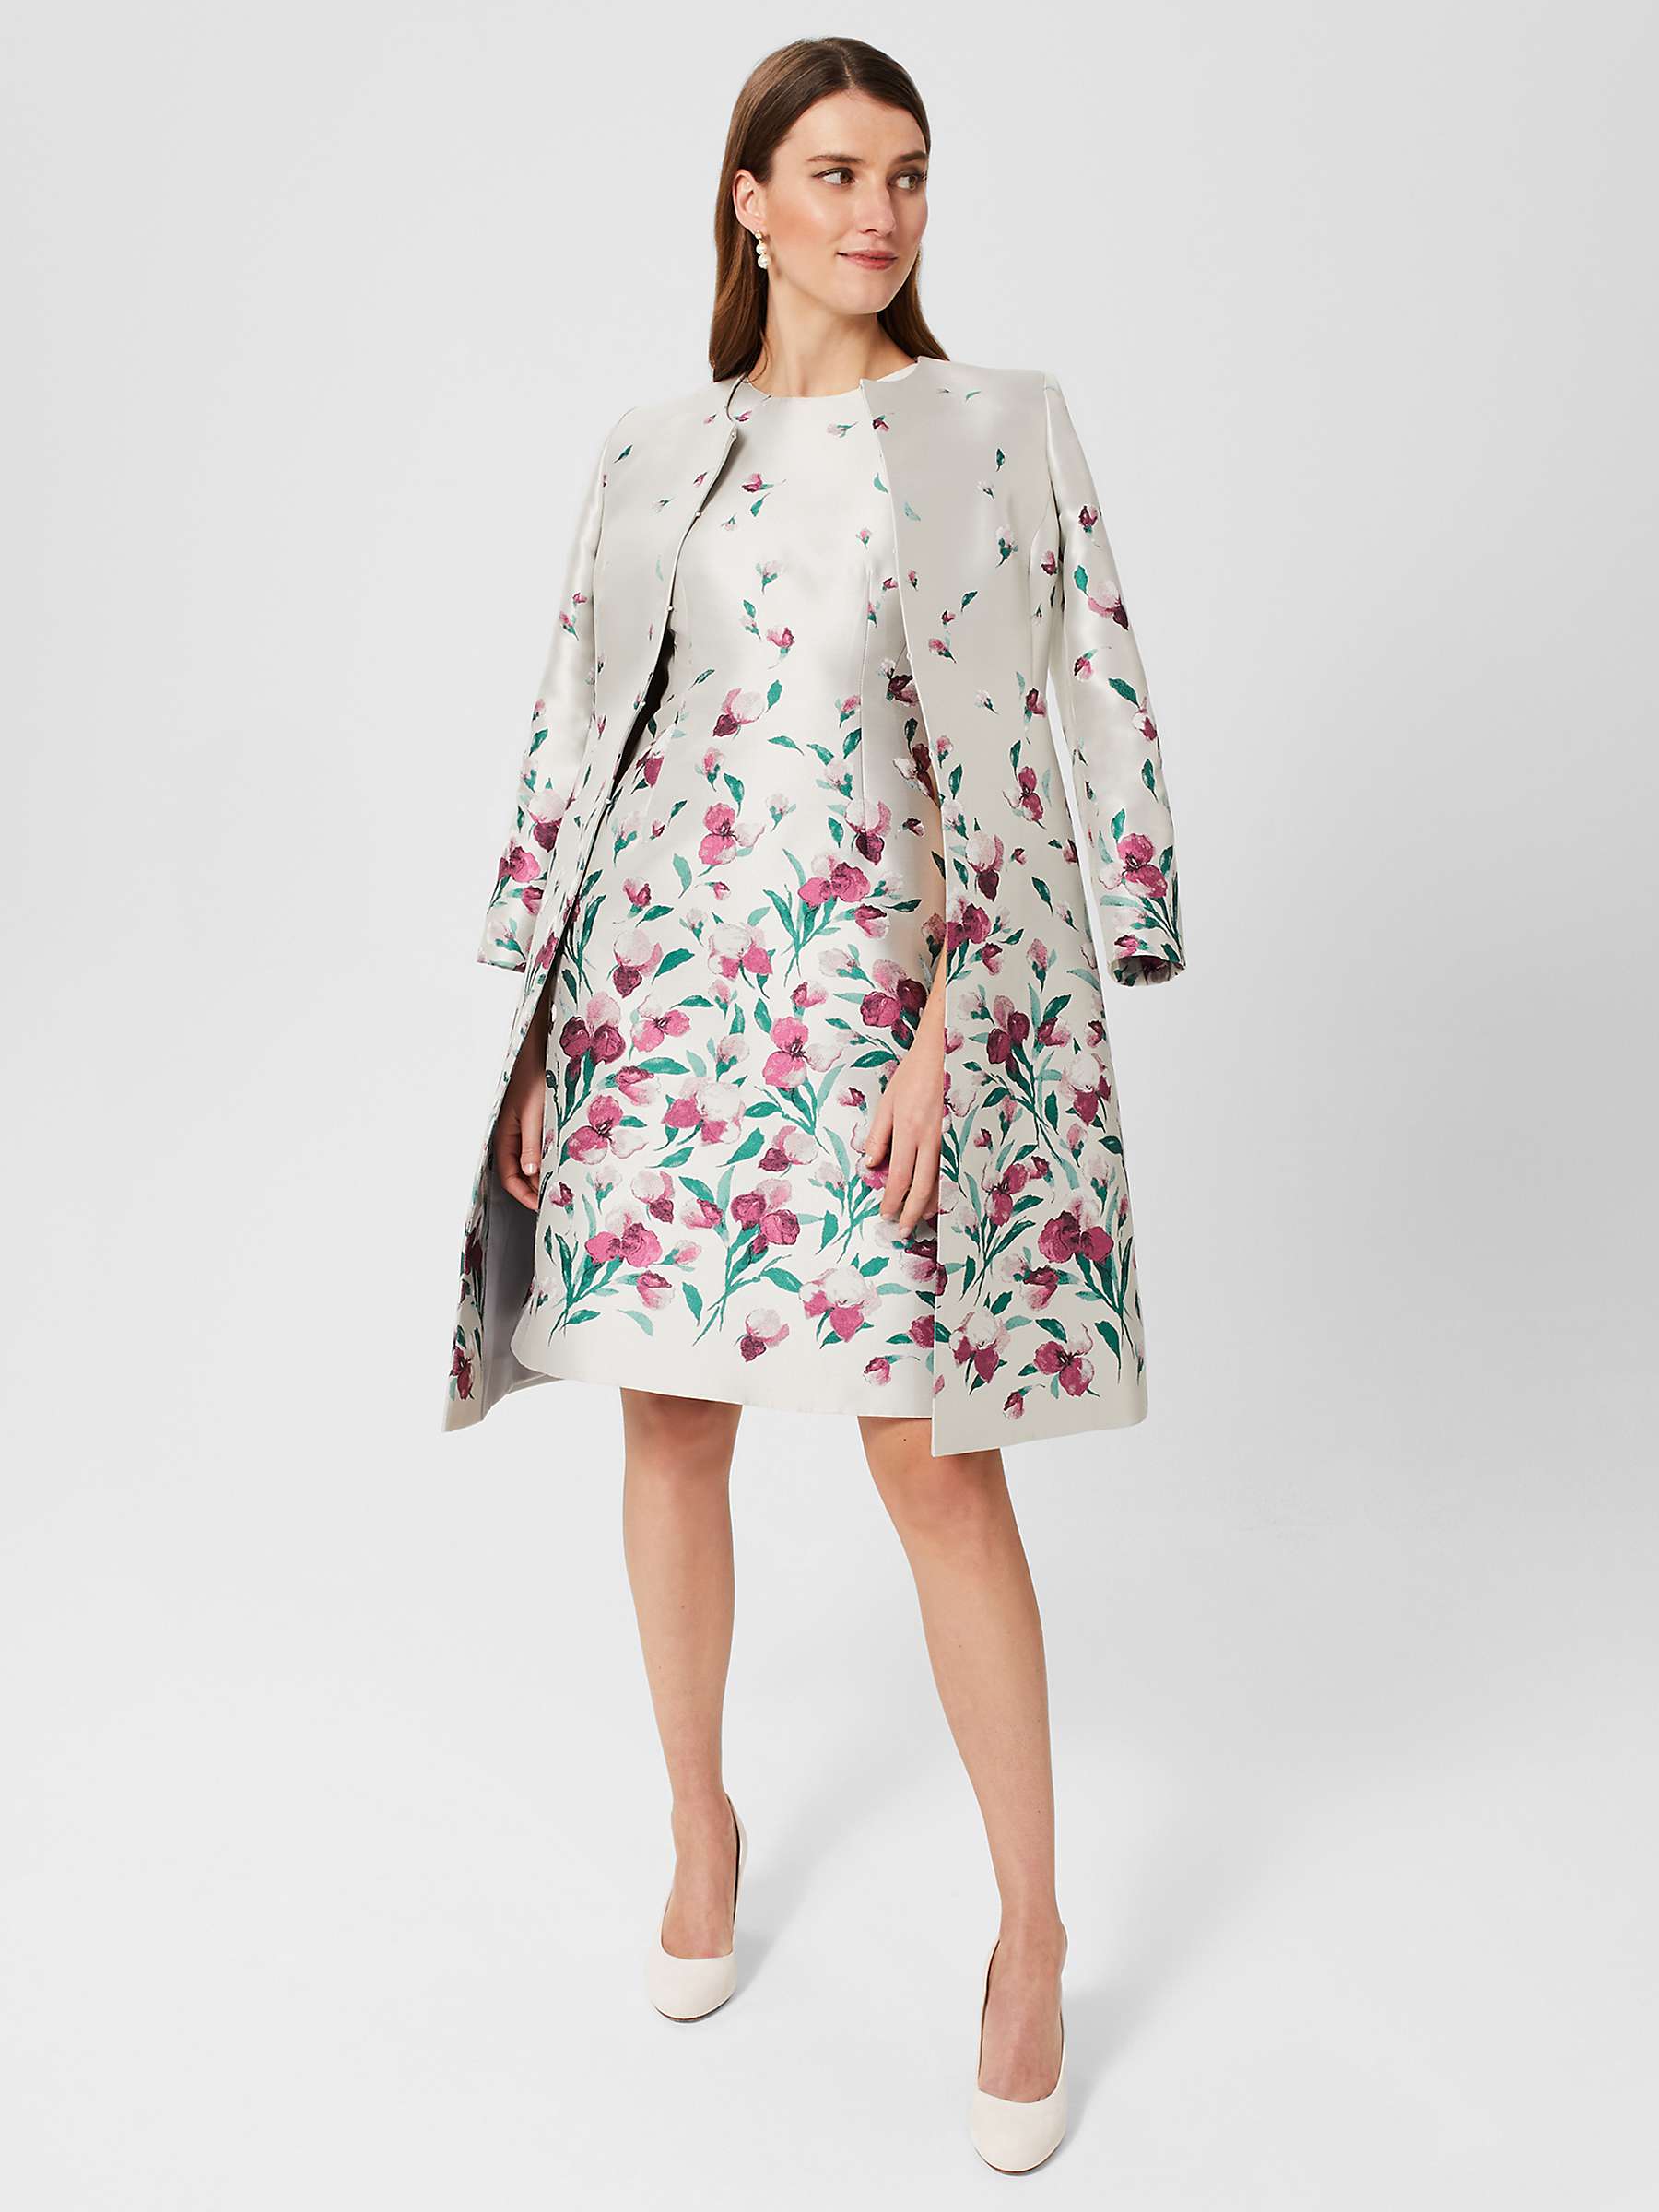 Hobbs Gwen Jacquard Dress, Oyster/Multi at John Lewis & Partners